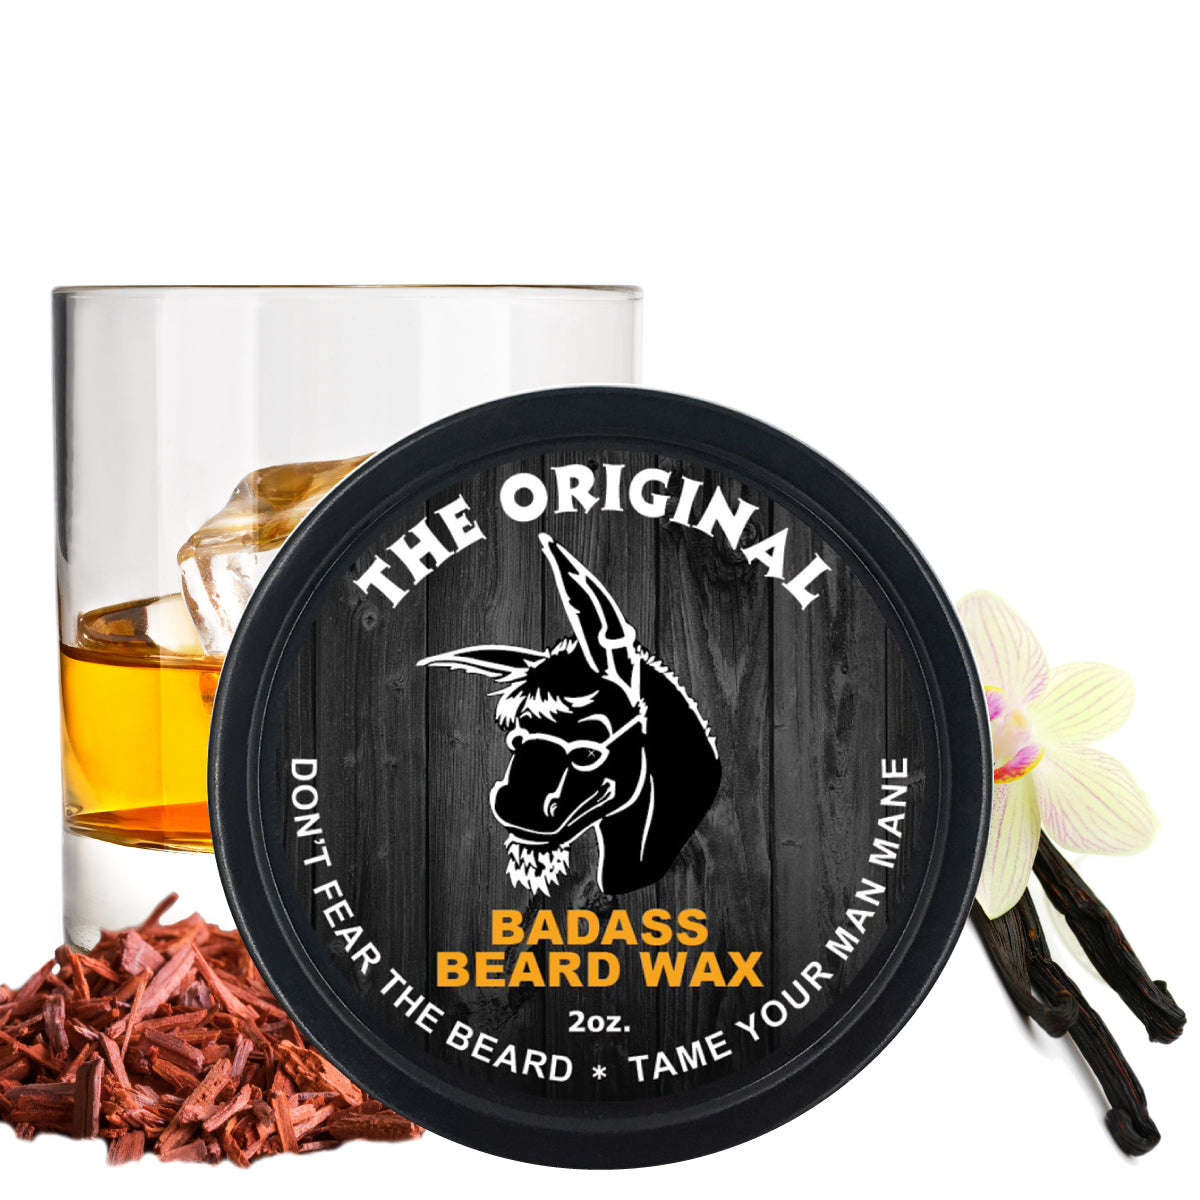 Badass Beard Wax - The Original